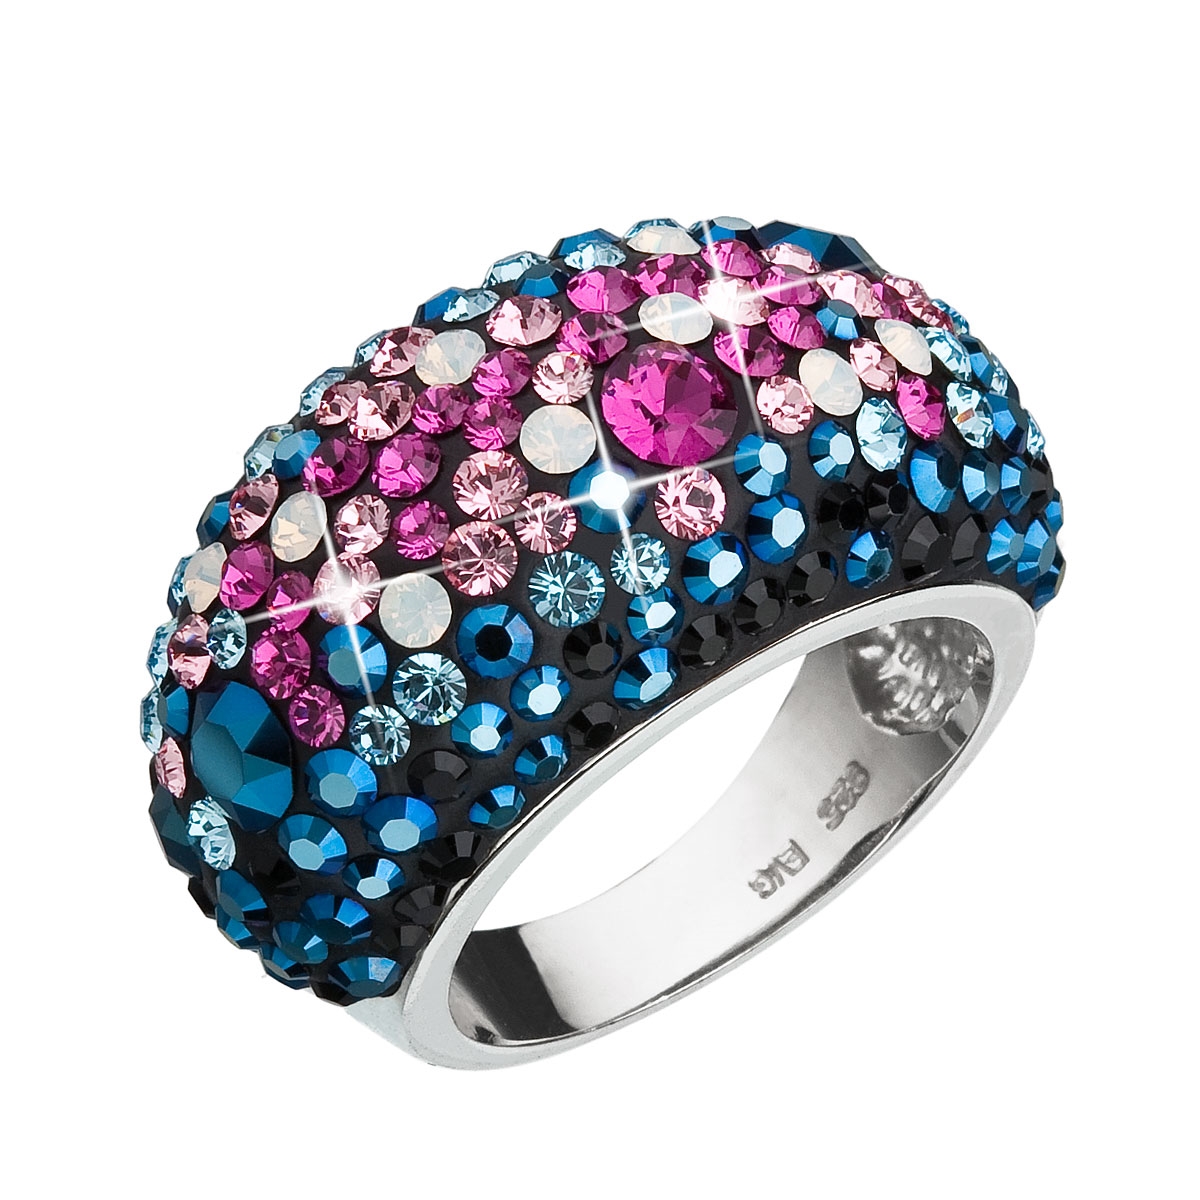 Strieborný prsteň s kryštálmi Crystals from Swarovski ®, Galaxy